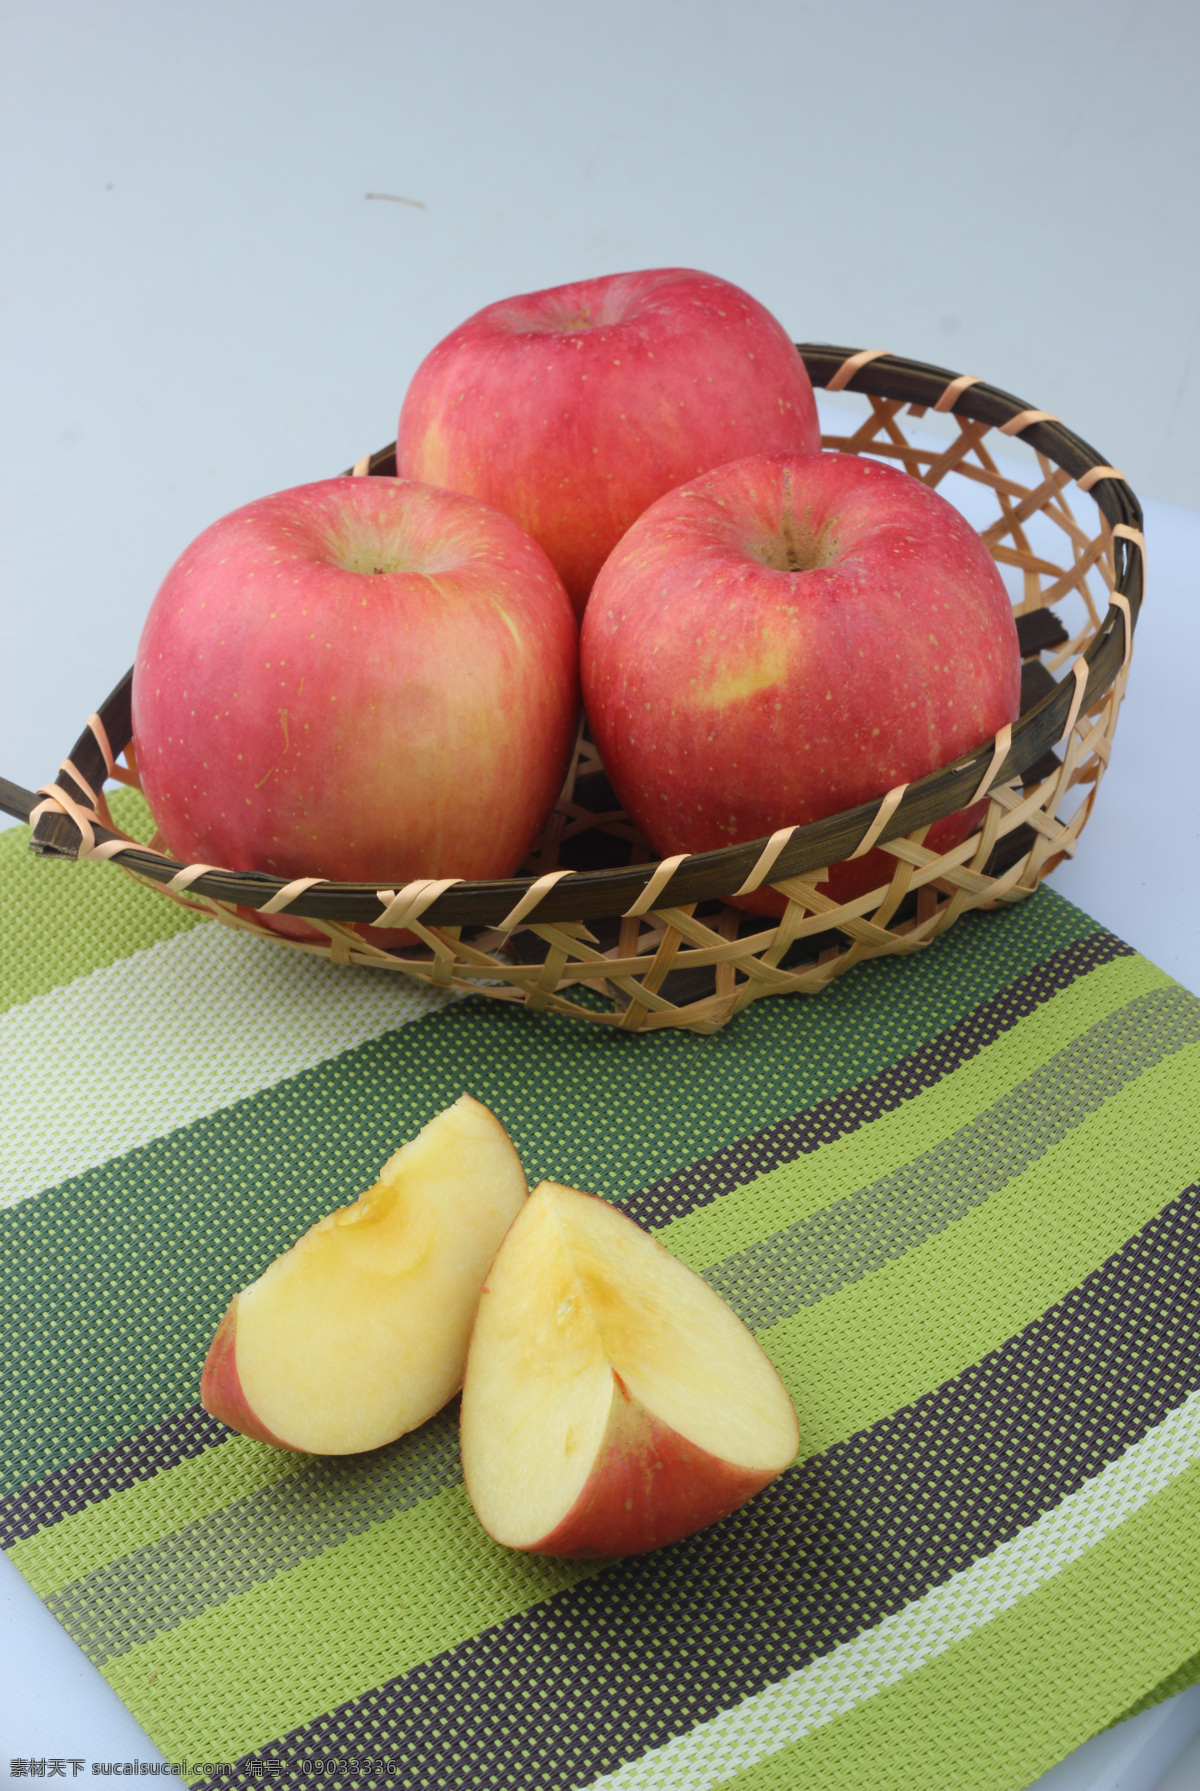 苹果 水果 红苹果 圣诞苹果 超市苹果 红富士 陕西苹果 90苹果 生物世界